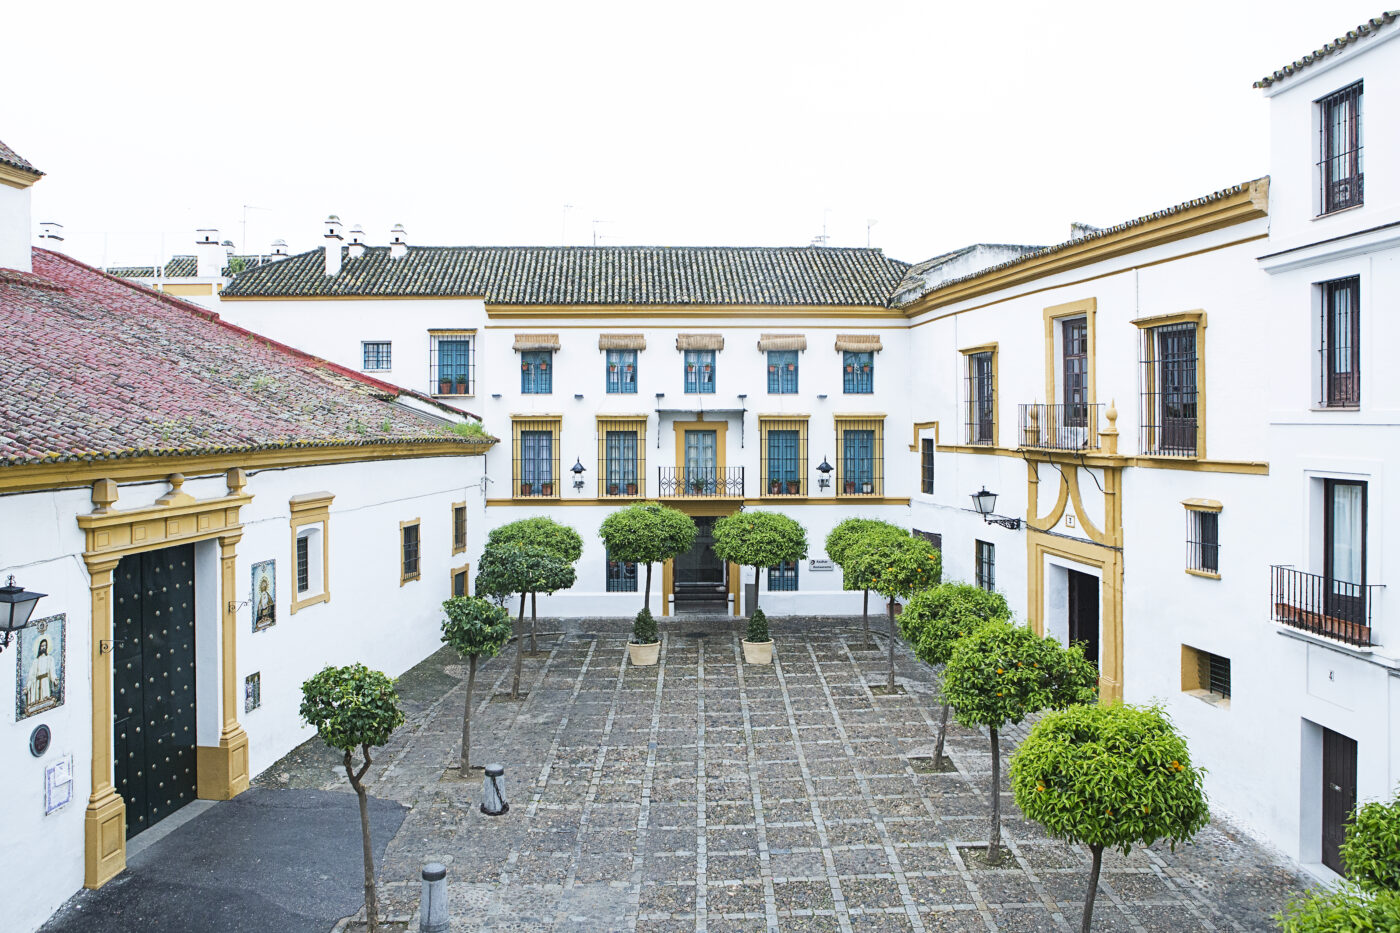 Hoteles con encanto Sevilla: Las Casas del Rey de Baeza 4*